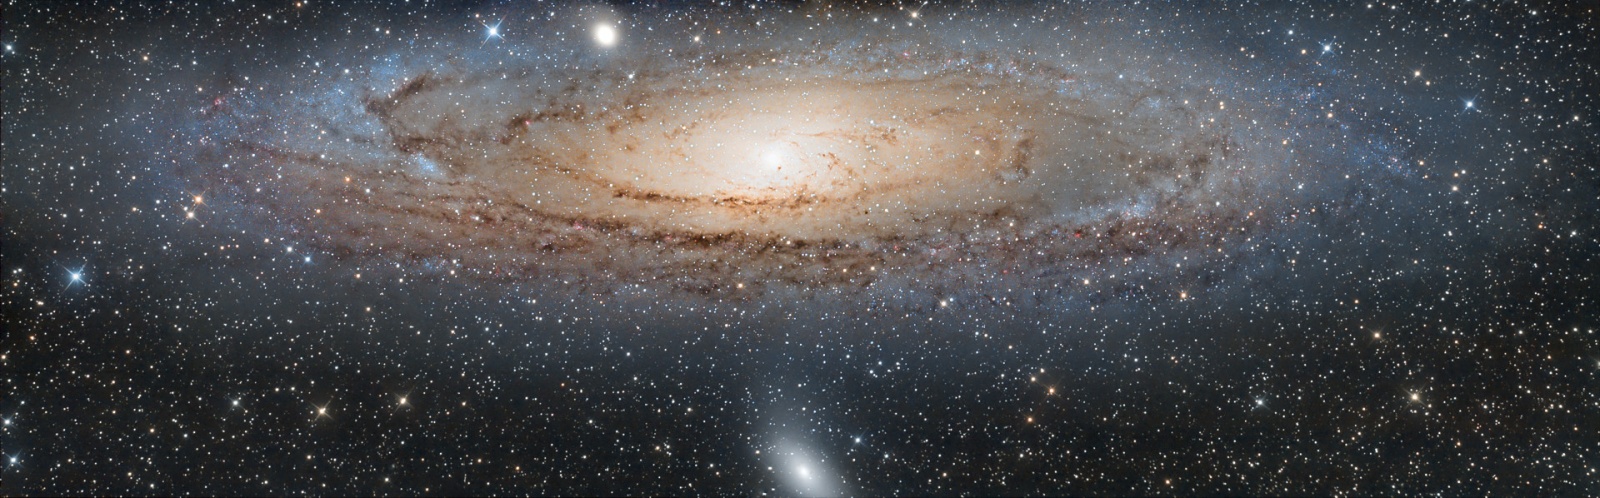 Галактика Андромеды и та её спиральная ветвь, которая ориентирована в сторону галактики Млечный путь (более близкая к нам). Автор астрофотоснимка Fran Pascualin  